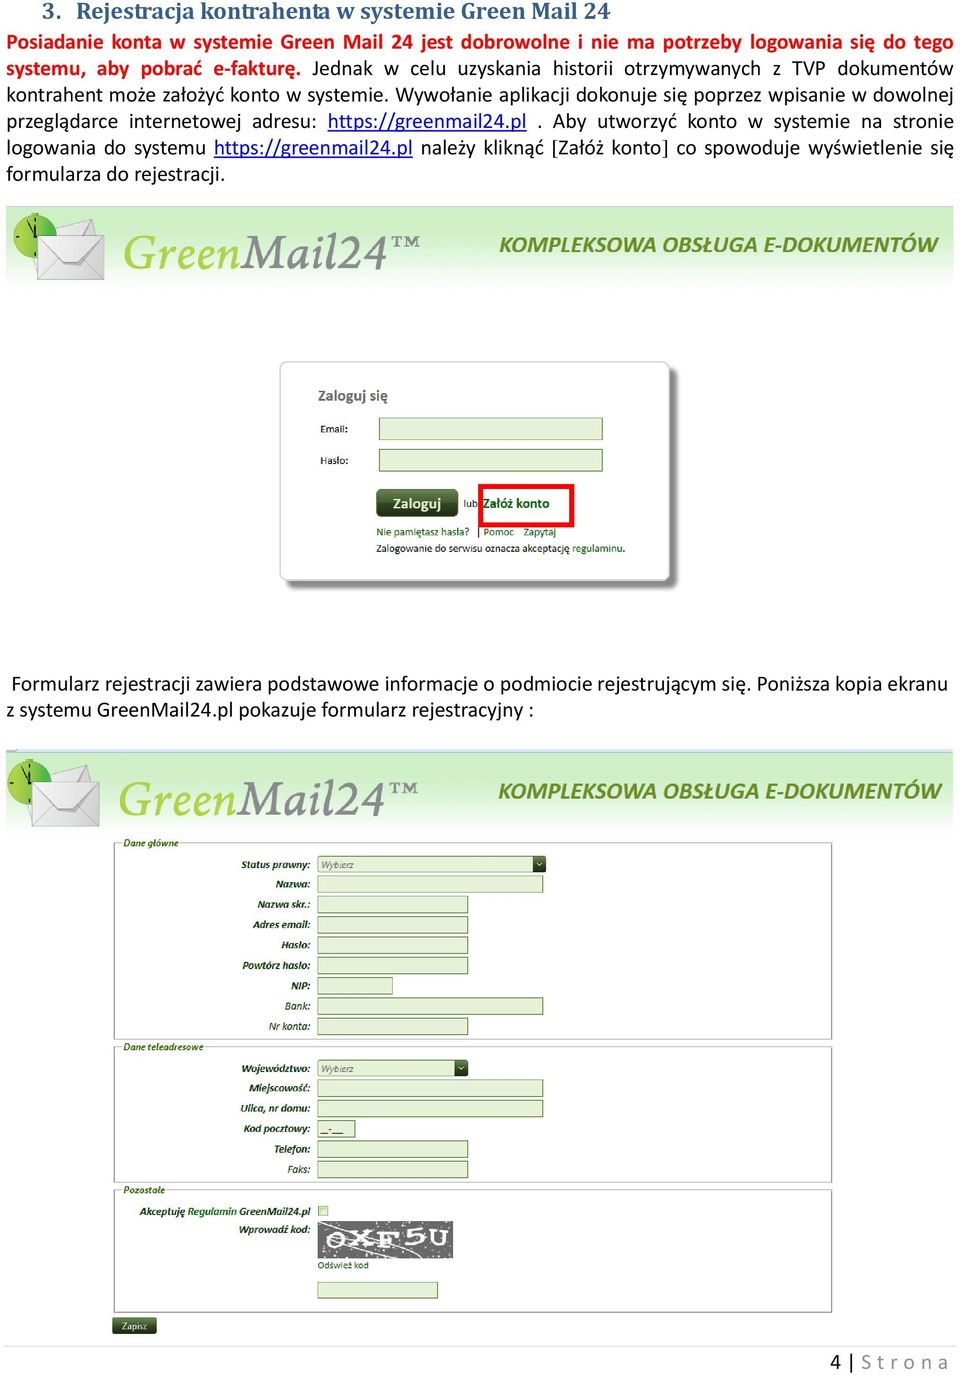 Wywołanie aplikacji dokonuje się poprzez wpisanie w dowolnej przeglądarce internetowej adresu: https://greenmail24.pl. Aby utworzyć konto w systemie na stronie logowania do systemu https://greenmail24.